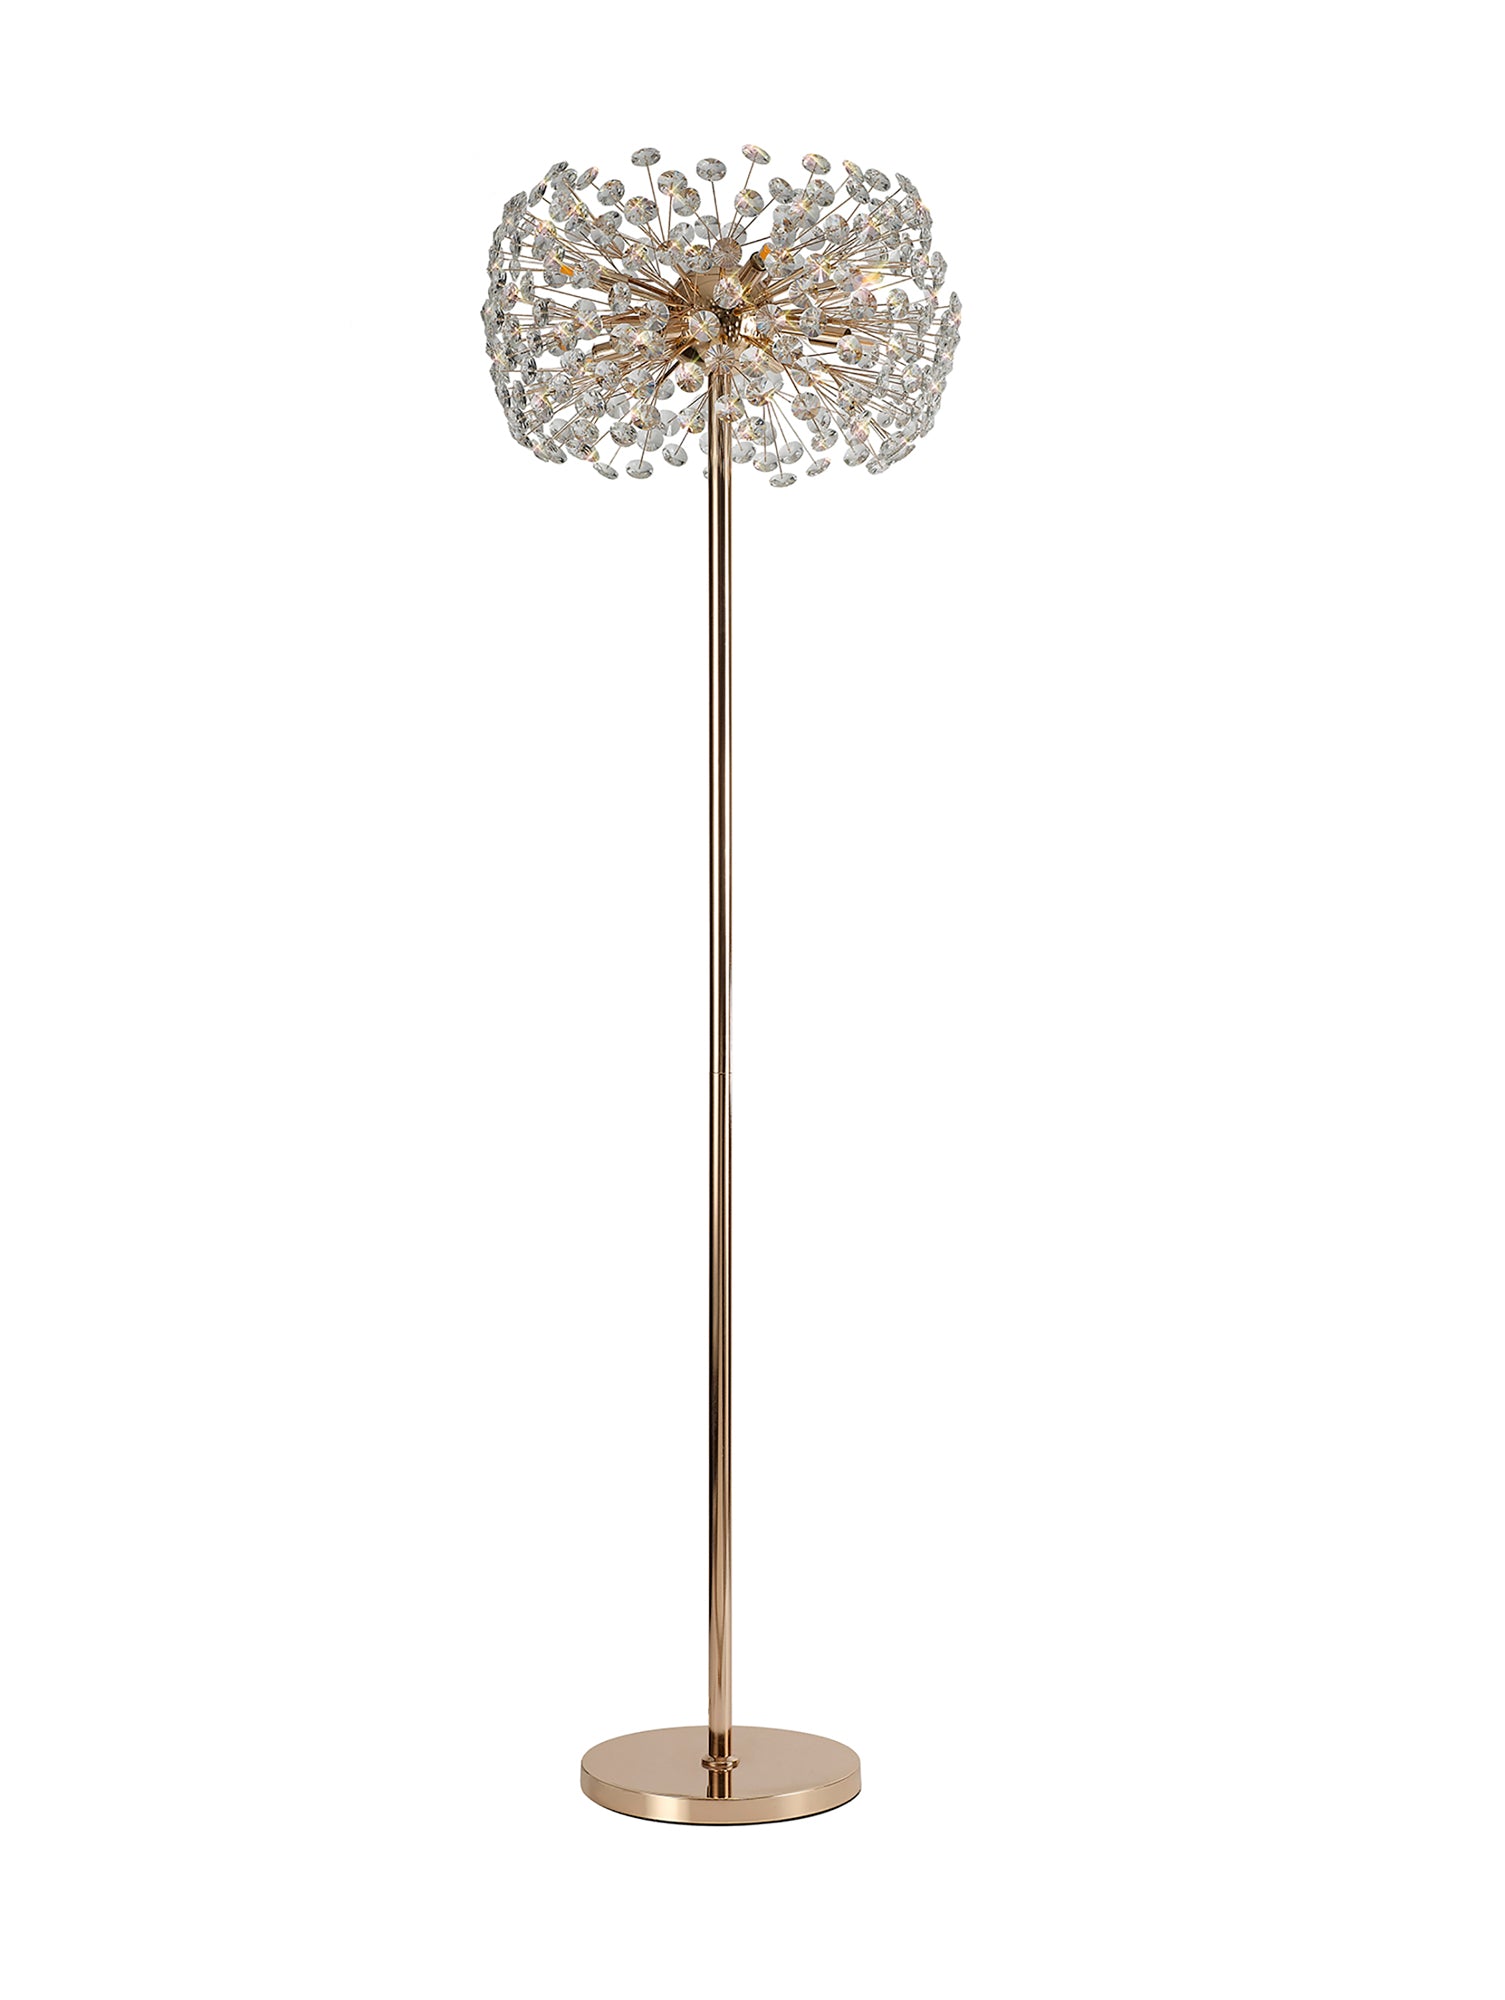 Chakkar Floor Lamp 8 Light G9 French Gold/Crystal